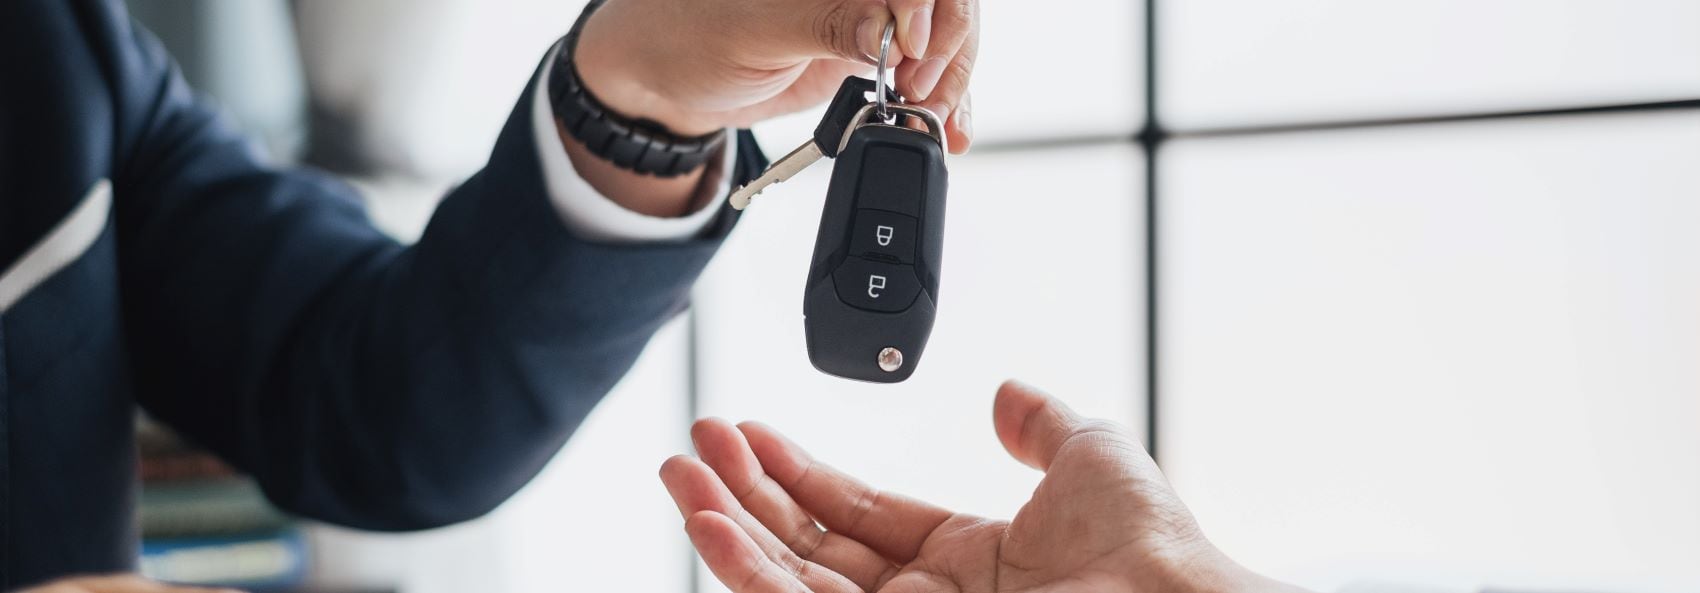 Handing over car keys to owner